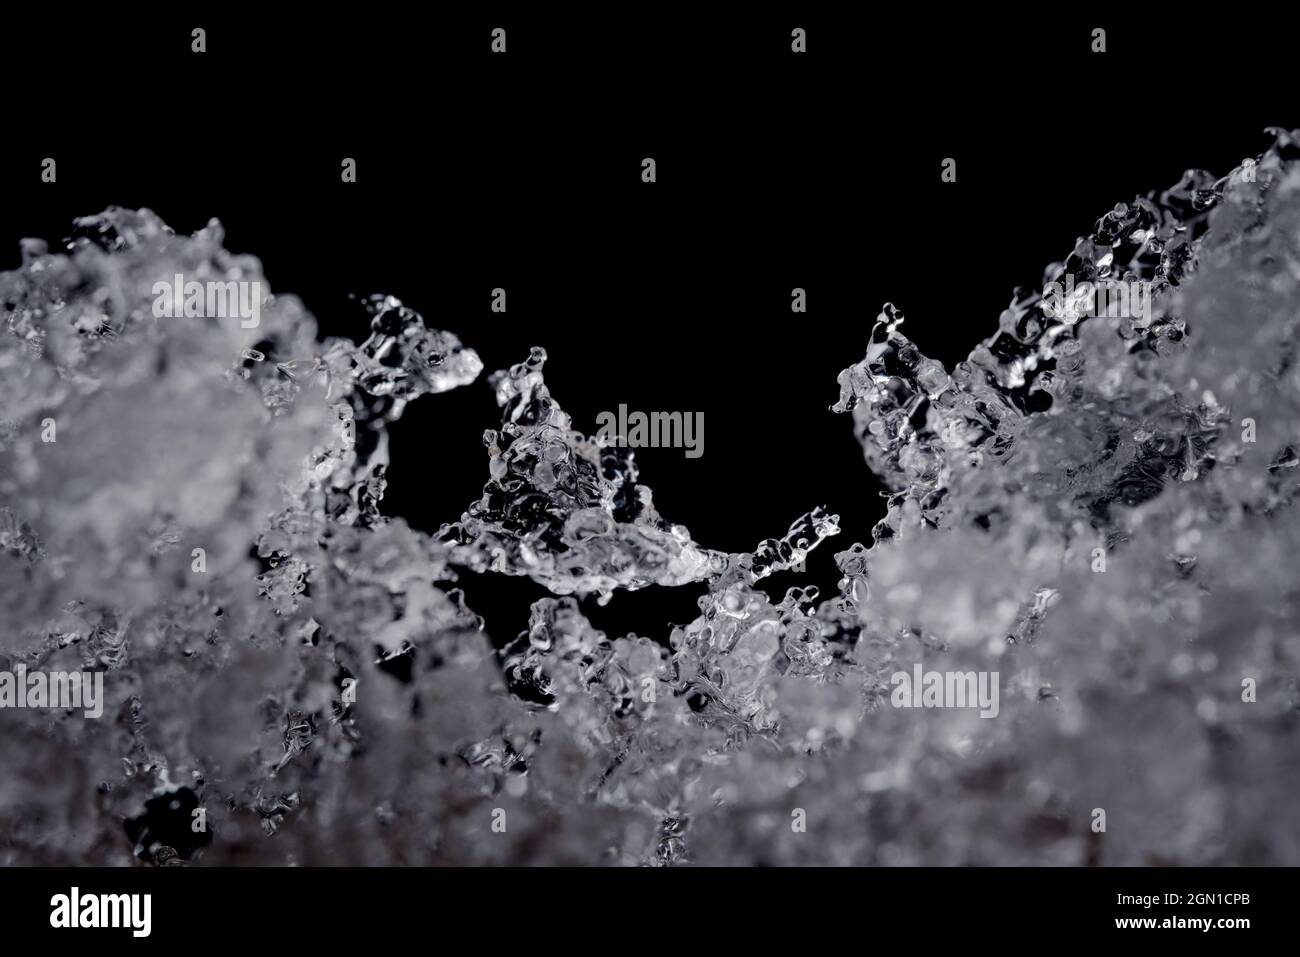 Détails complexes des particules d'eau de fusion. Concentrez-vous sur le cristal de glace de forme impaire au milieu, mais sur un arrière-plan noir Uni avec un espace de copie au-dessus. Banque D'Images